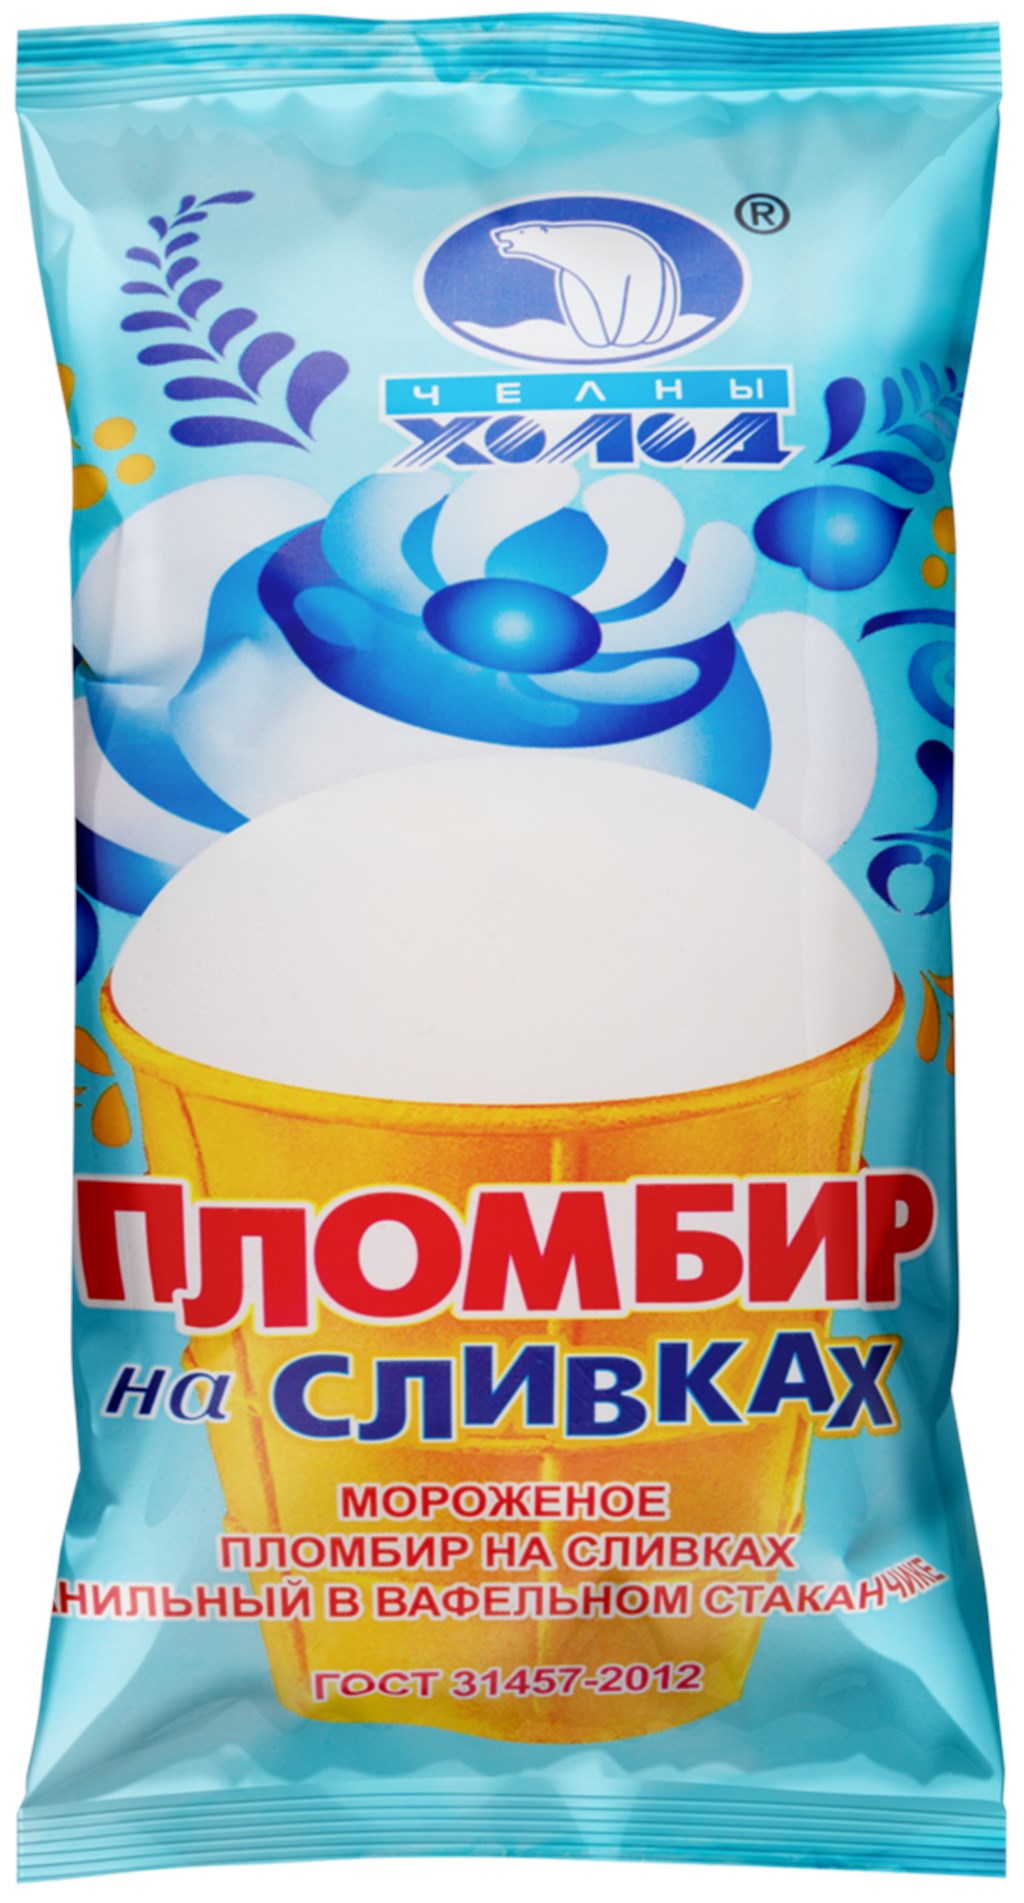 Мороженое Пломбир на сливках в вафельном стаканчике - Томск 